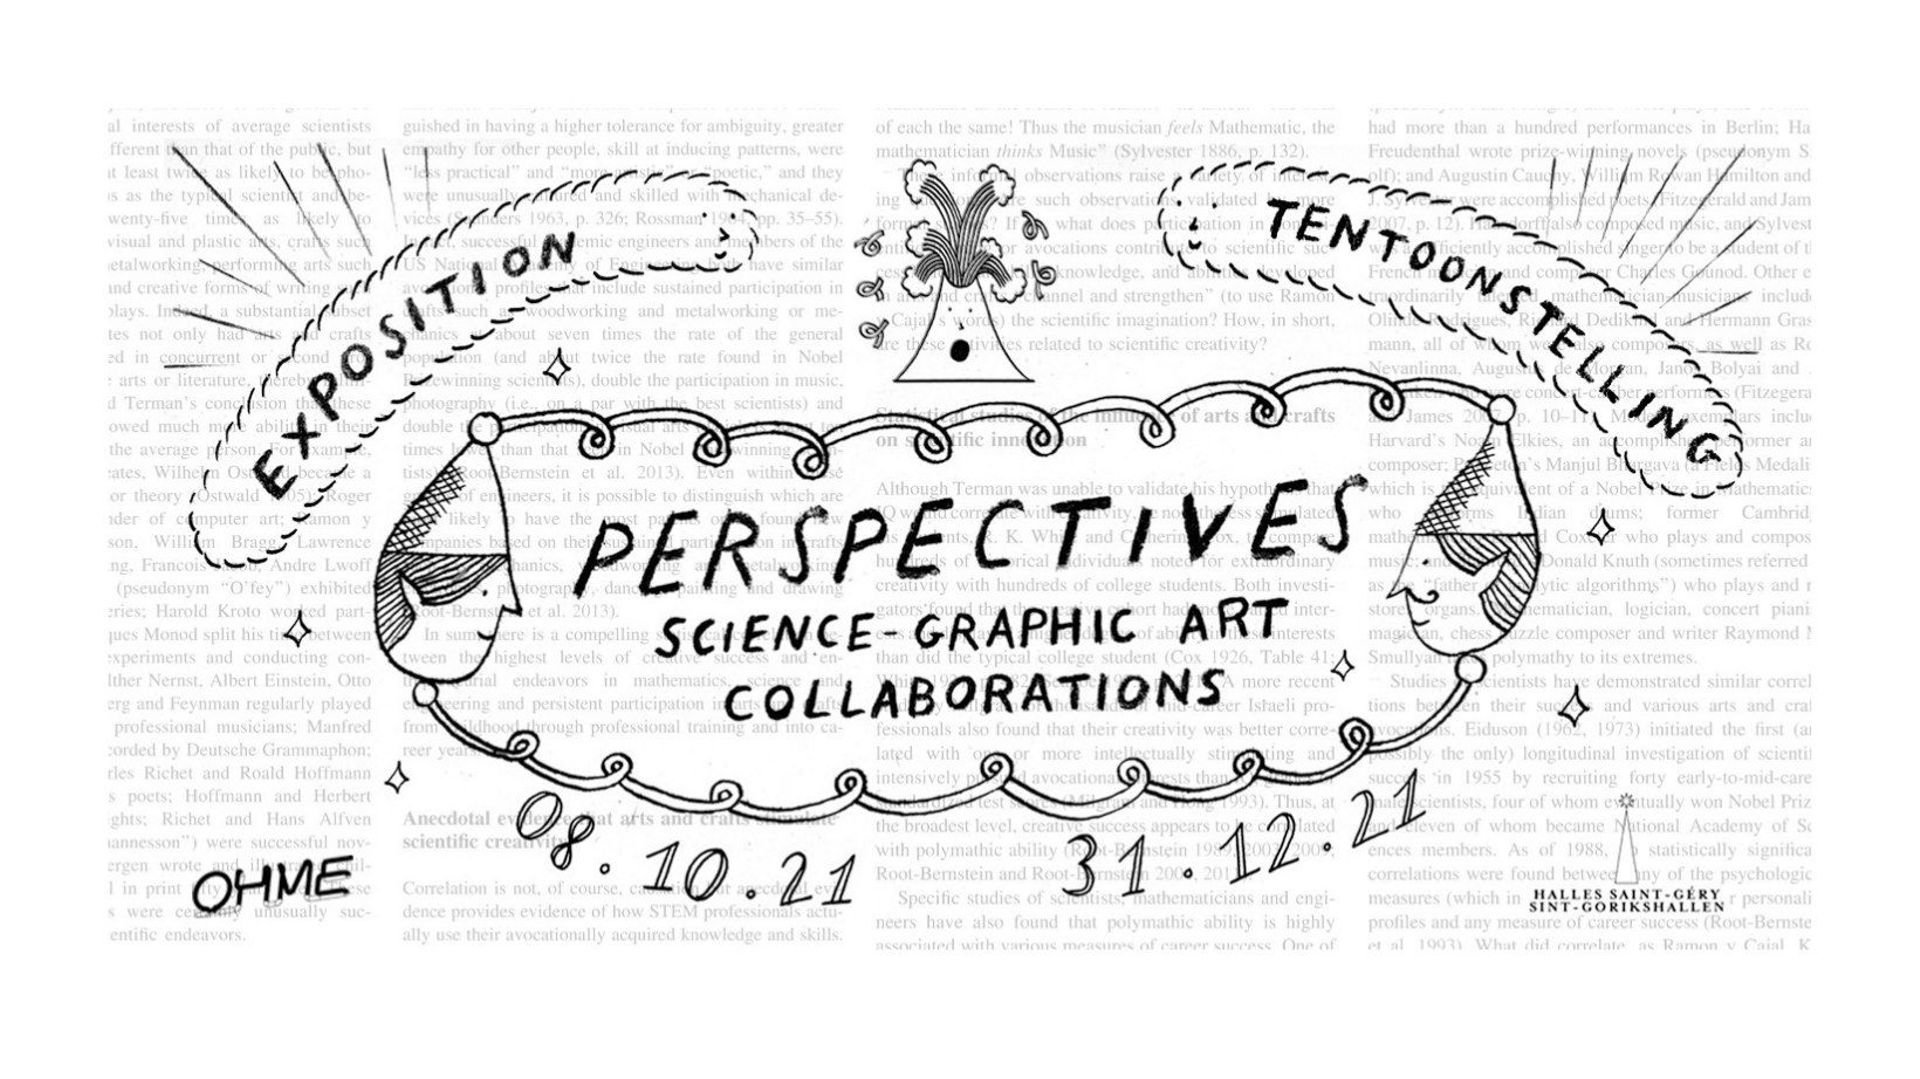 "Perspectives" au Halles Saint-Géry : quand l’art est au service de la science